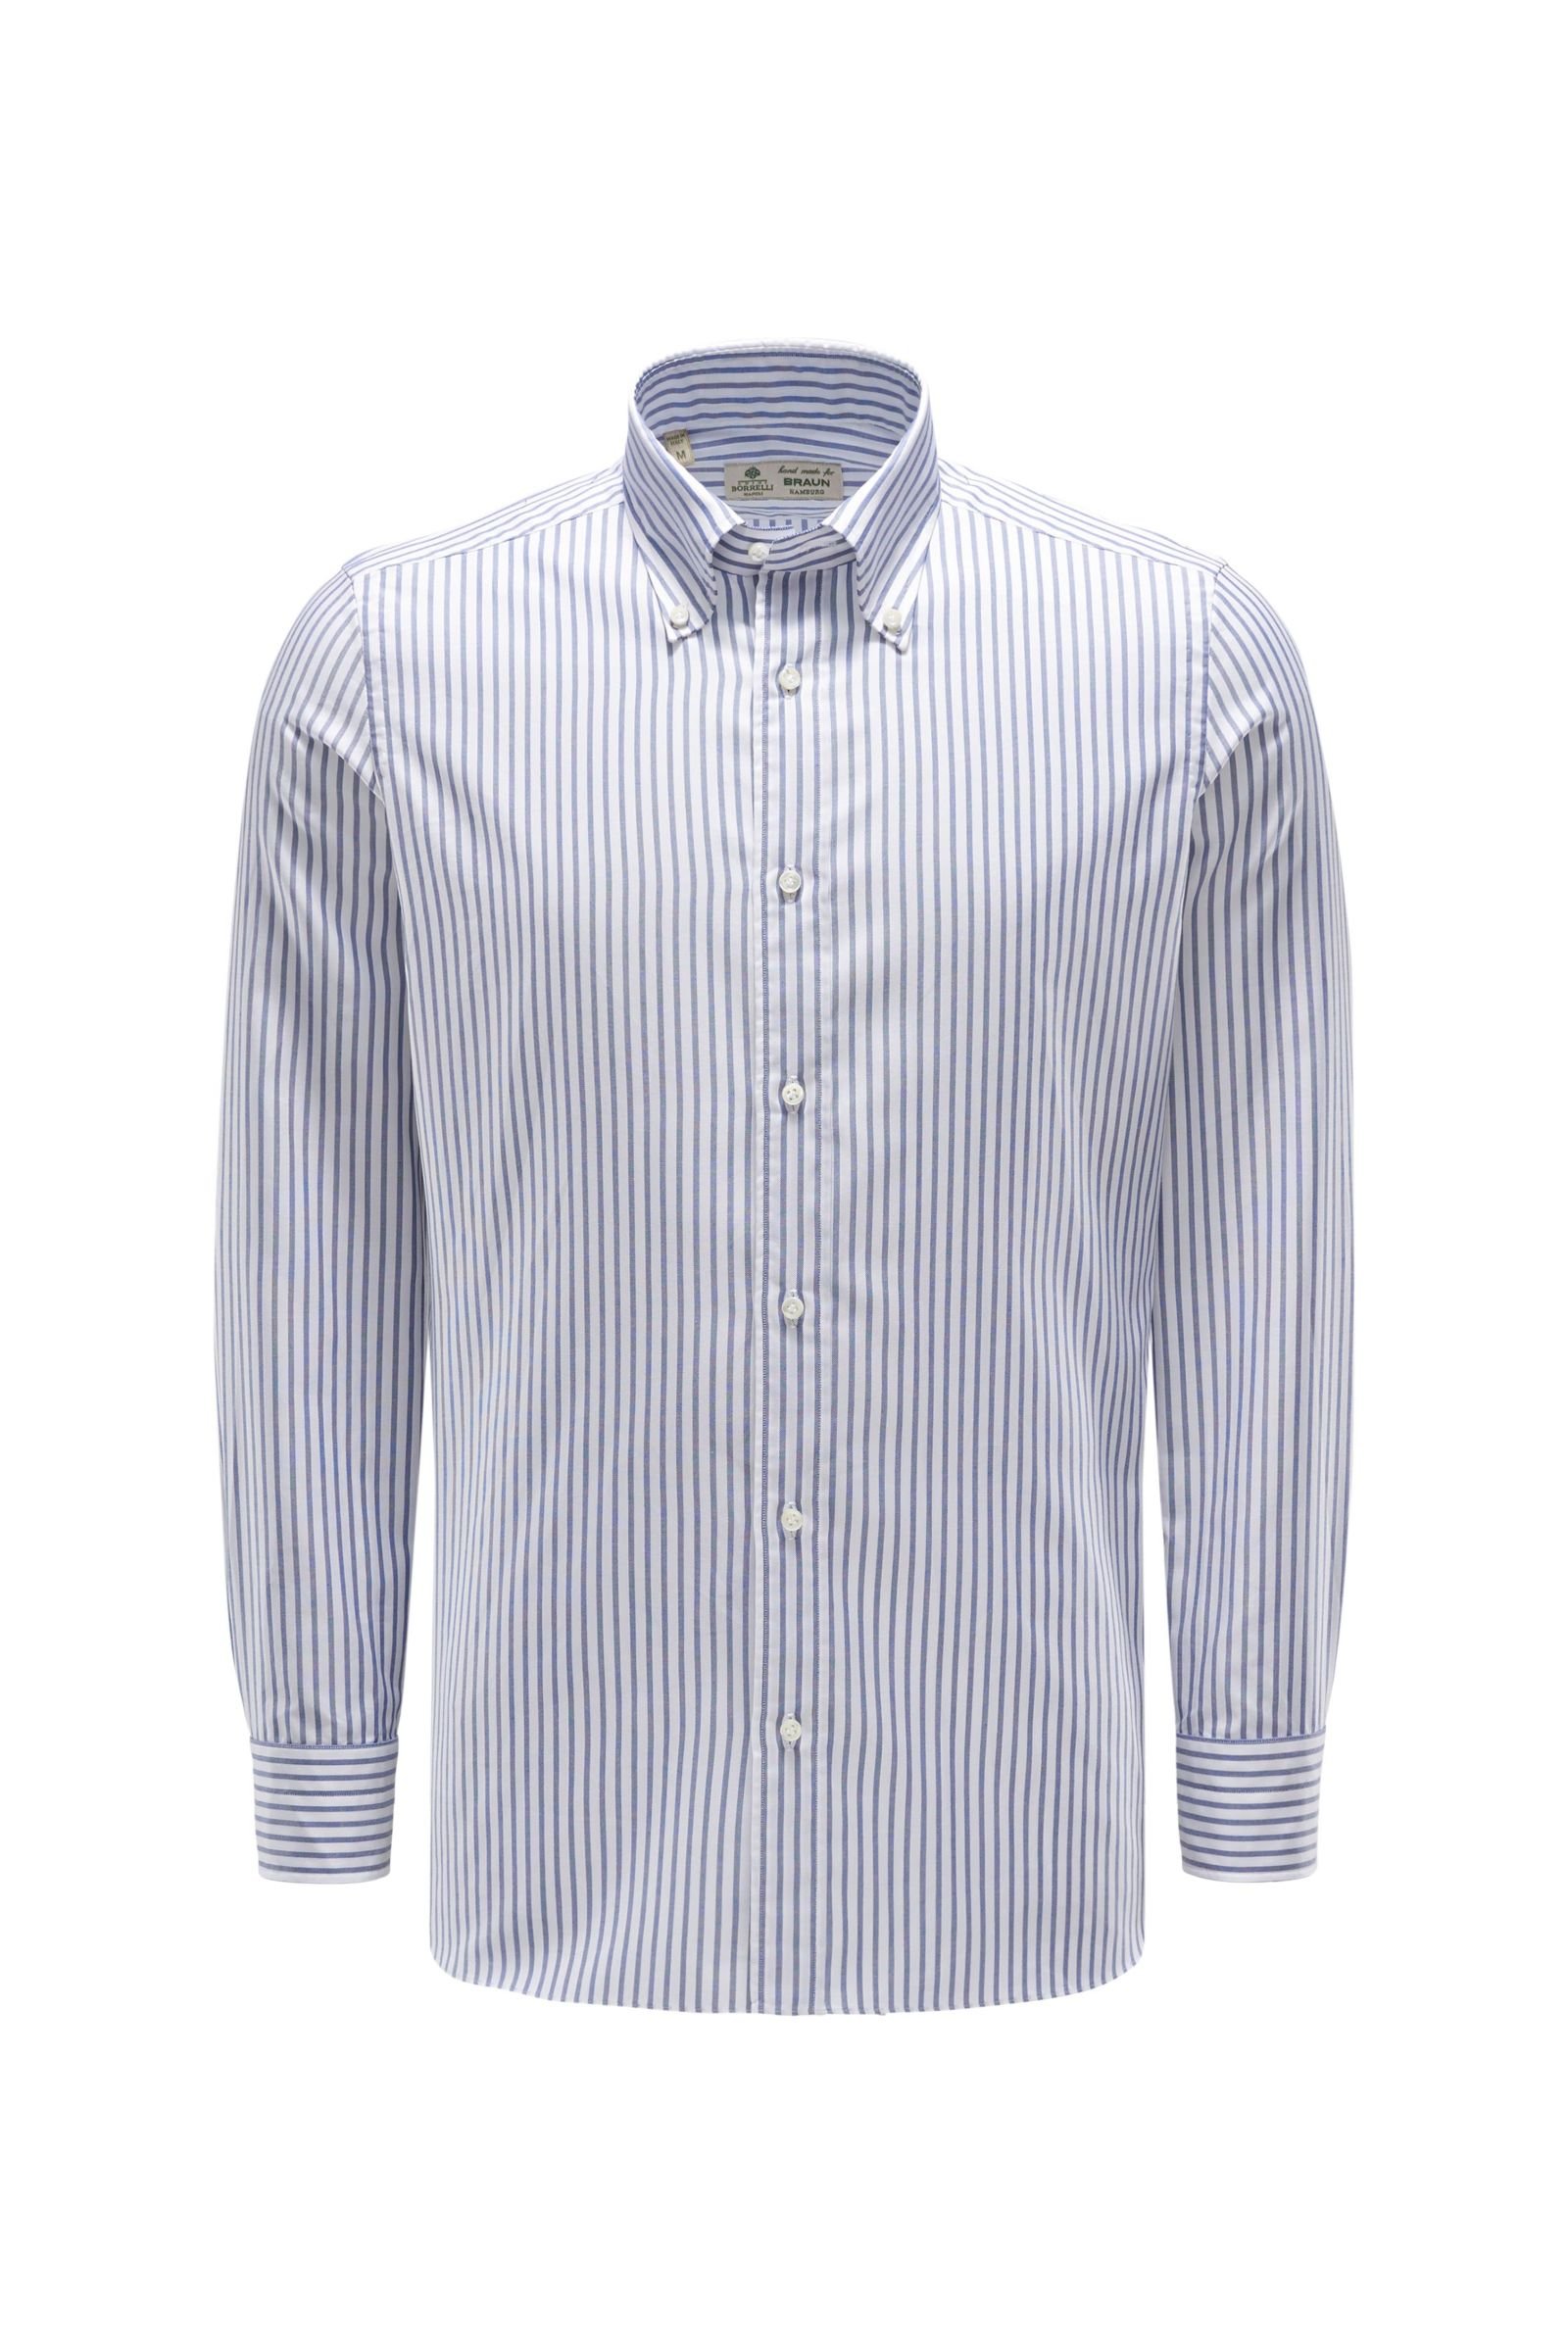 Oxfordhemd Button-Down-Kragen graublau/weiß gestreift